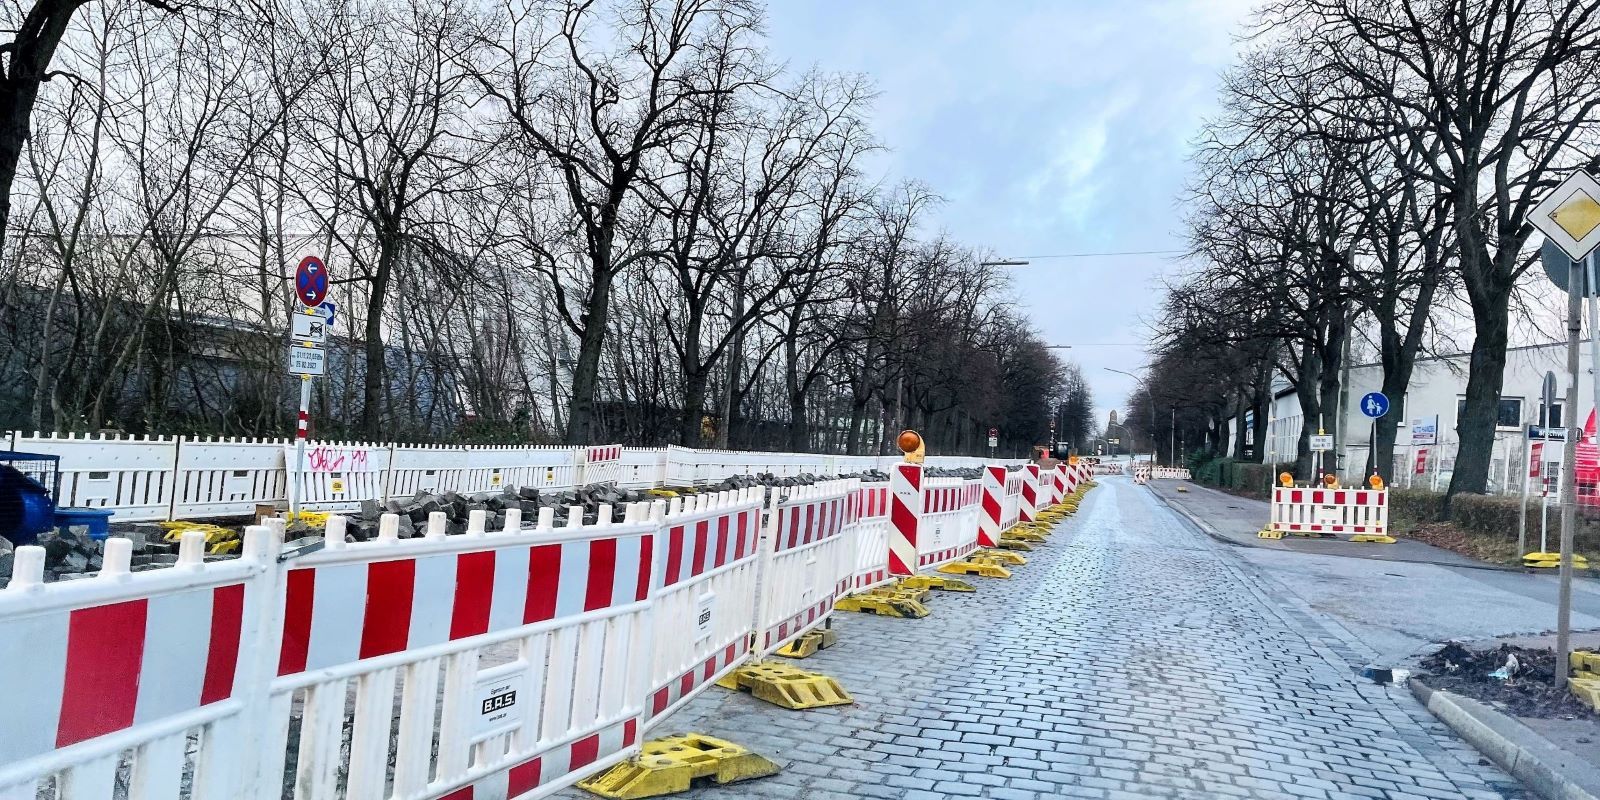 Verlängerung an der Hannoverschen Straße: Noch einmal verzögert sich die Fertigstellung der Baustelle, die eigentlich bereits Ende November abgehakt sein sollte.  Foto: Christian Bittcher